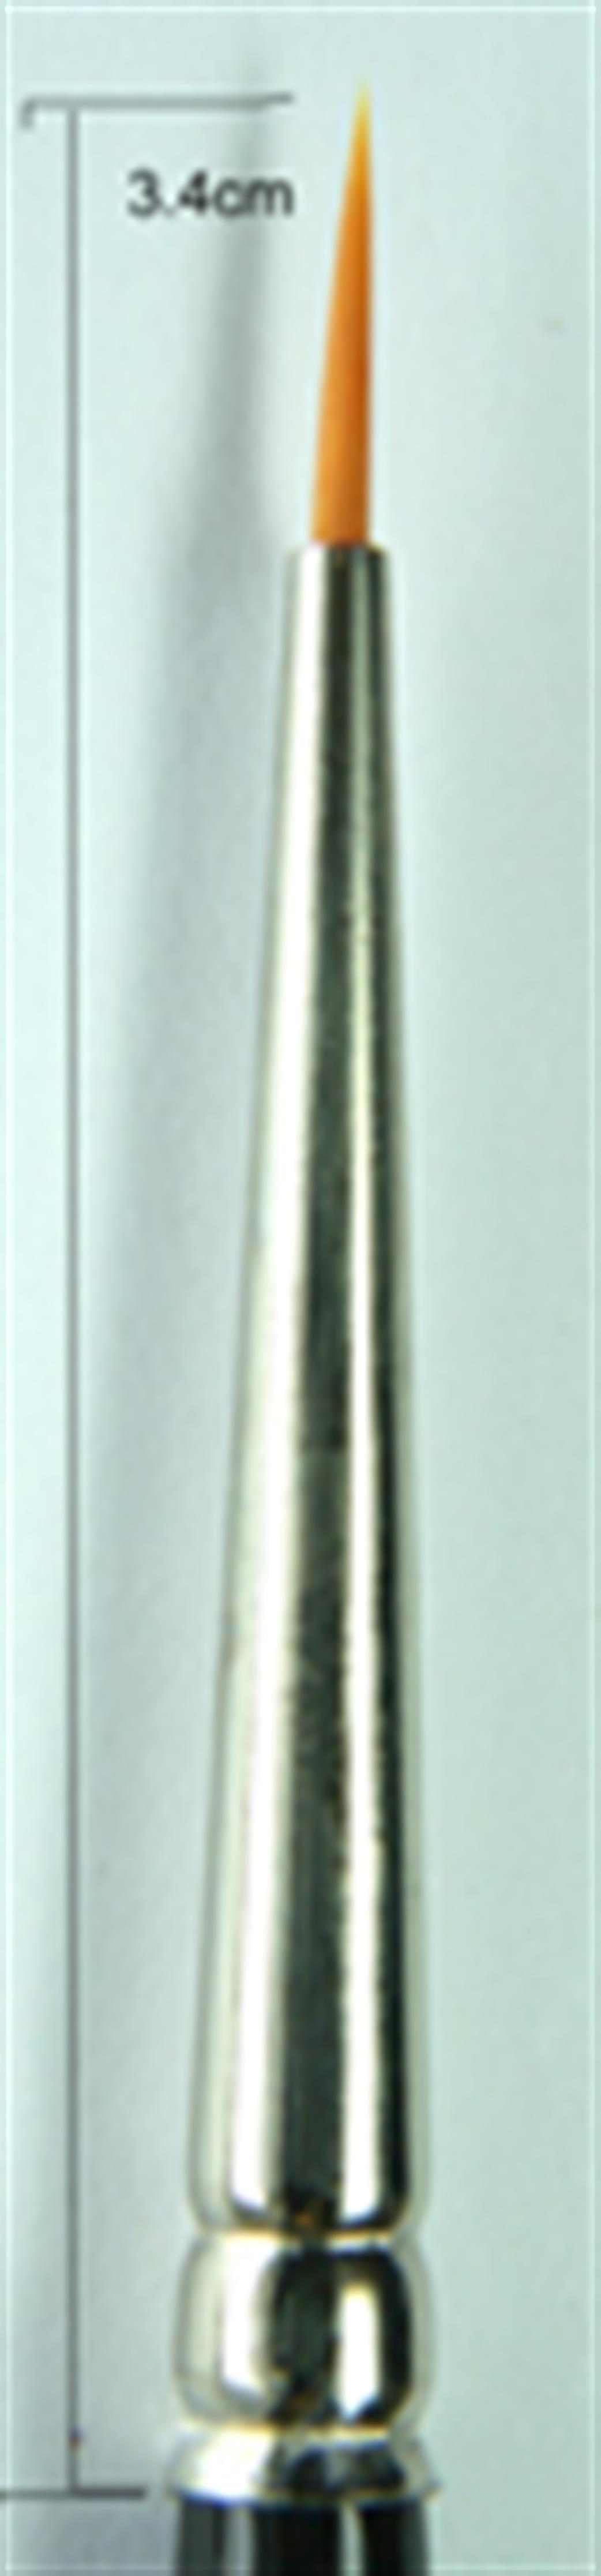 Premier P41-0 No 0 Toray Nylon Round Paint Brush